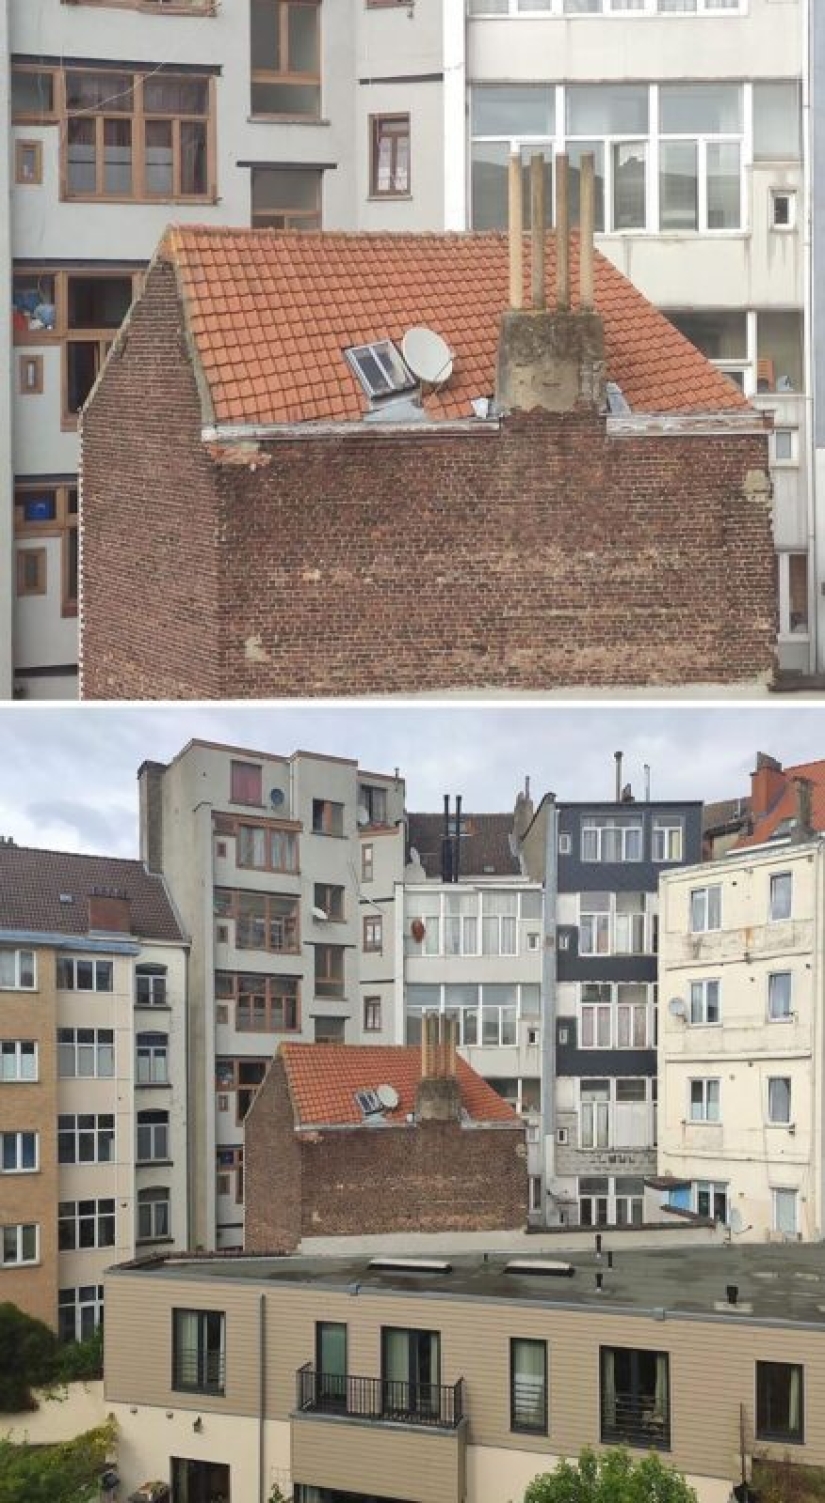 Un arquitecto no estándar de Bélgica: 15 edificios extraños y feos